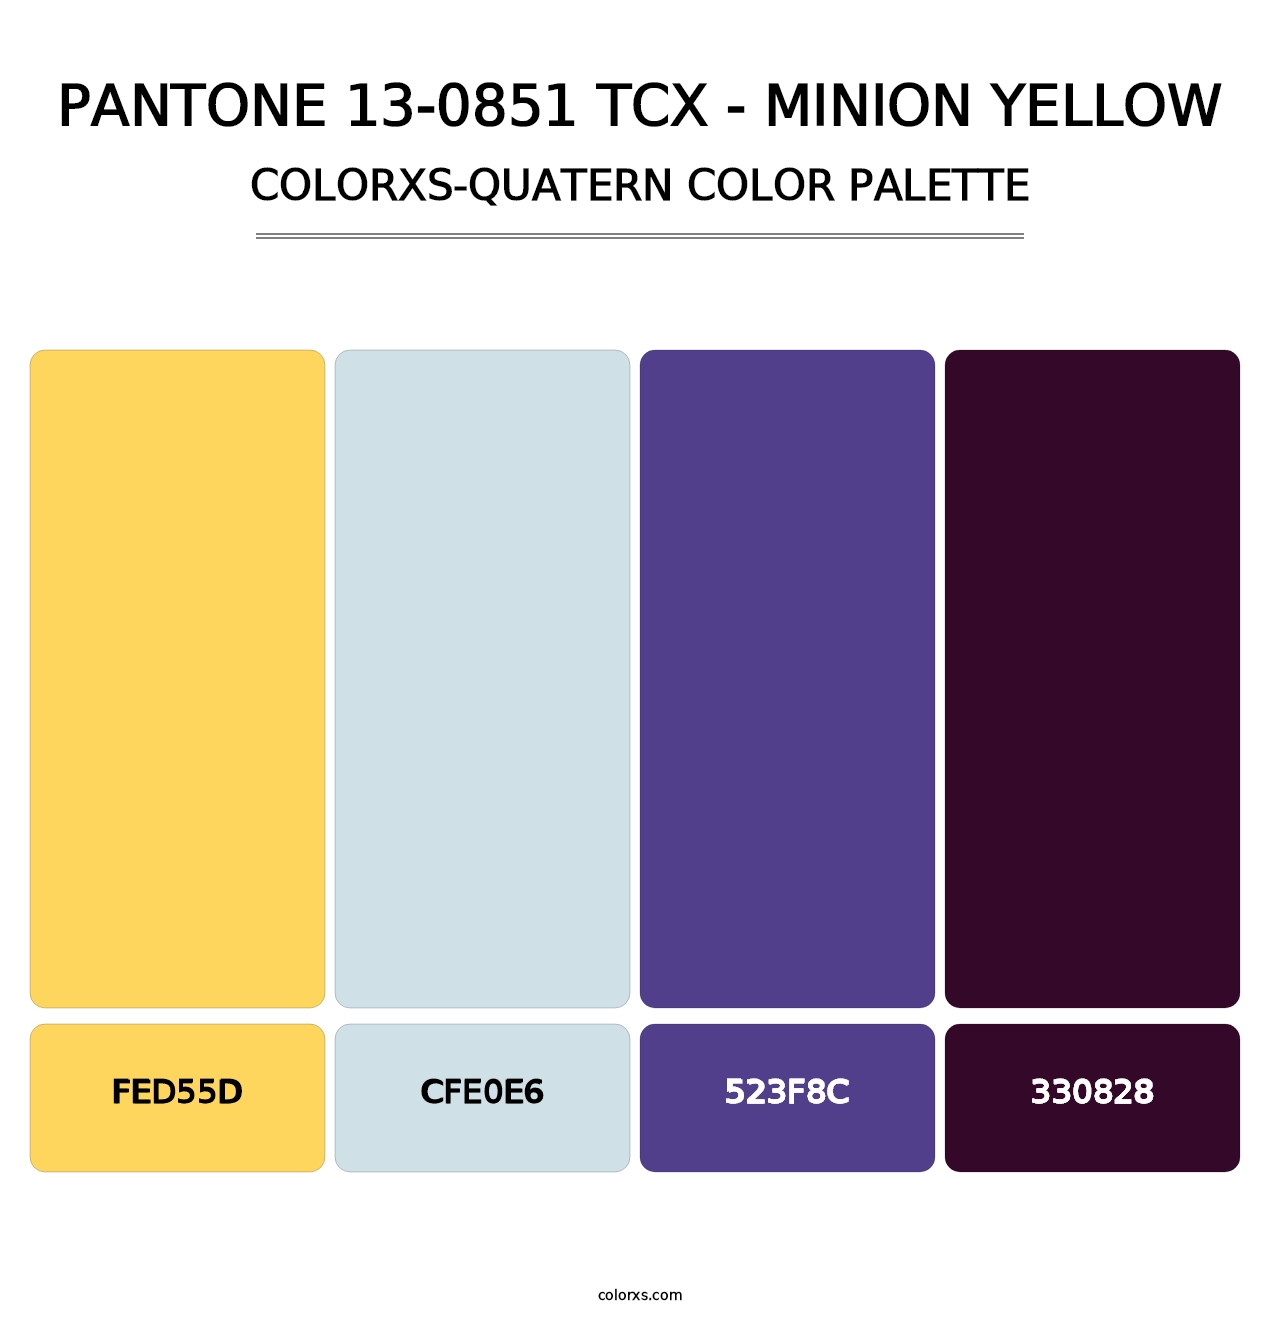 PANTONE 13-0851 TCX - Minion Yellow - Colorxs Quatern Palette